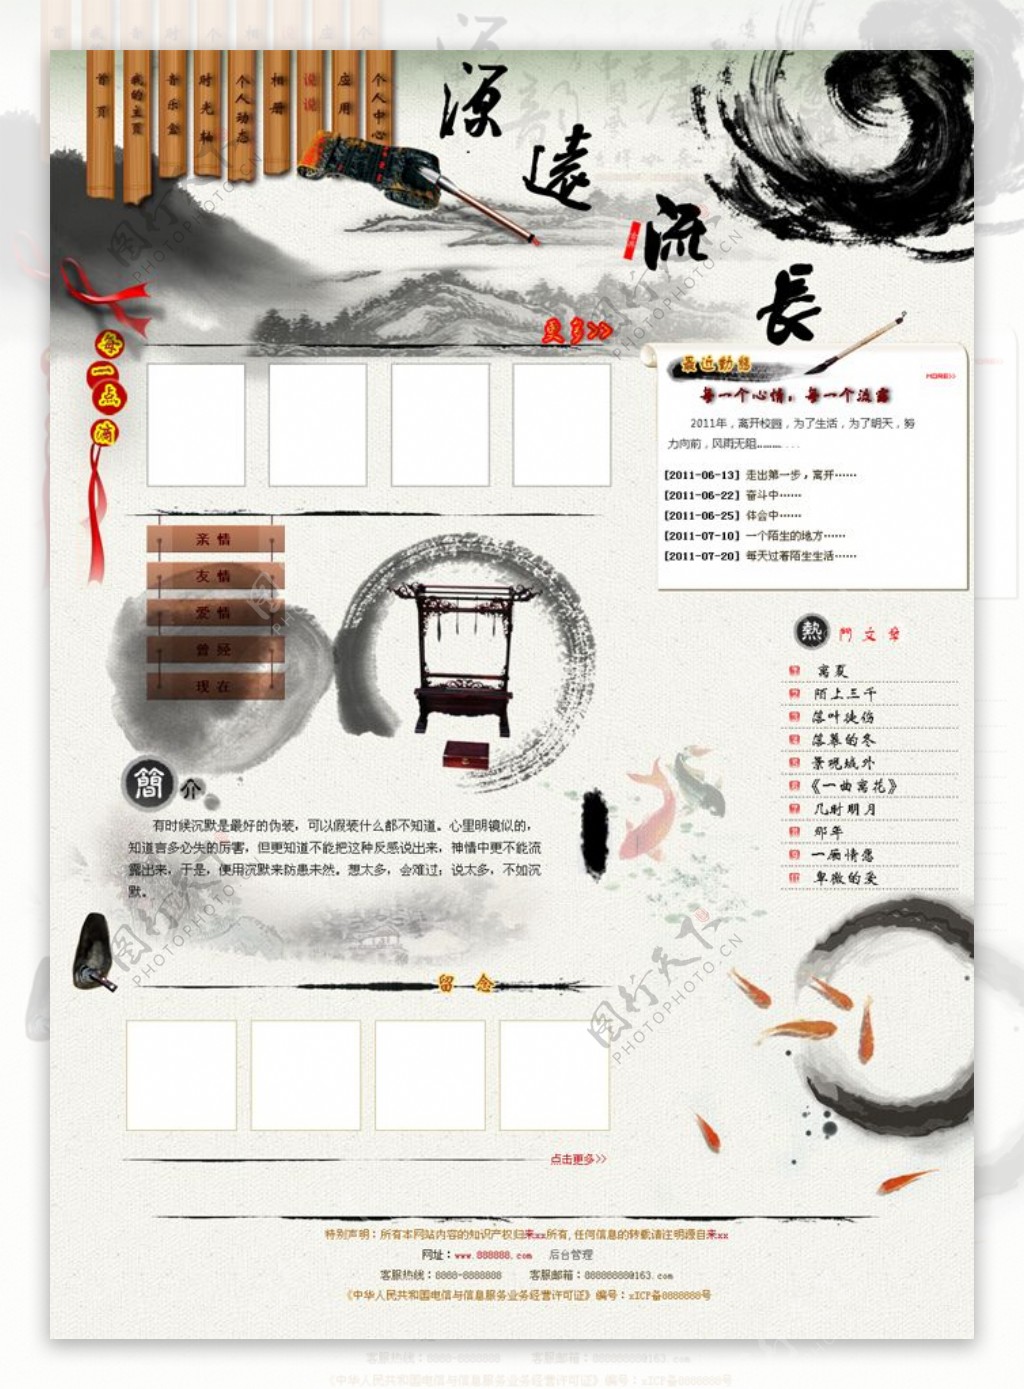 中国风网站模板